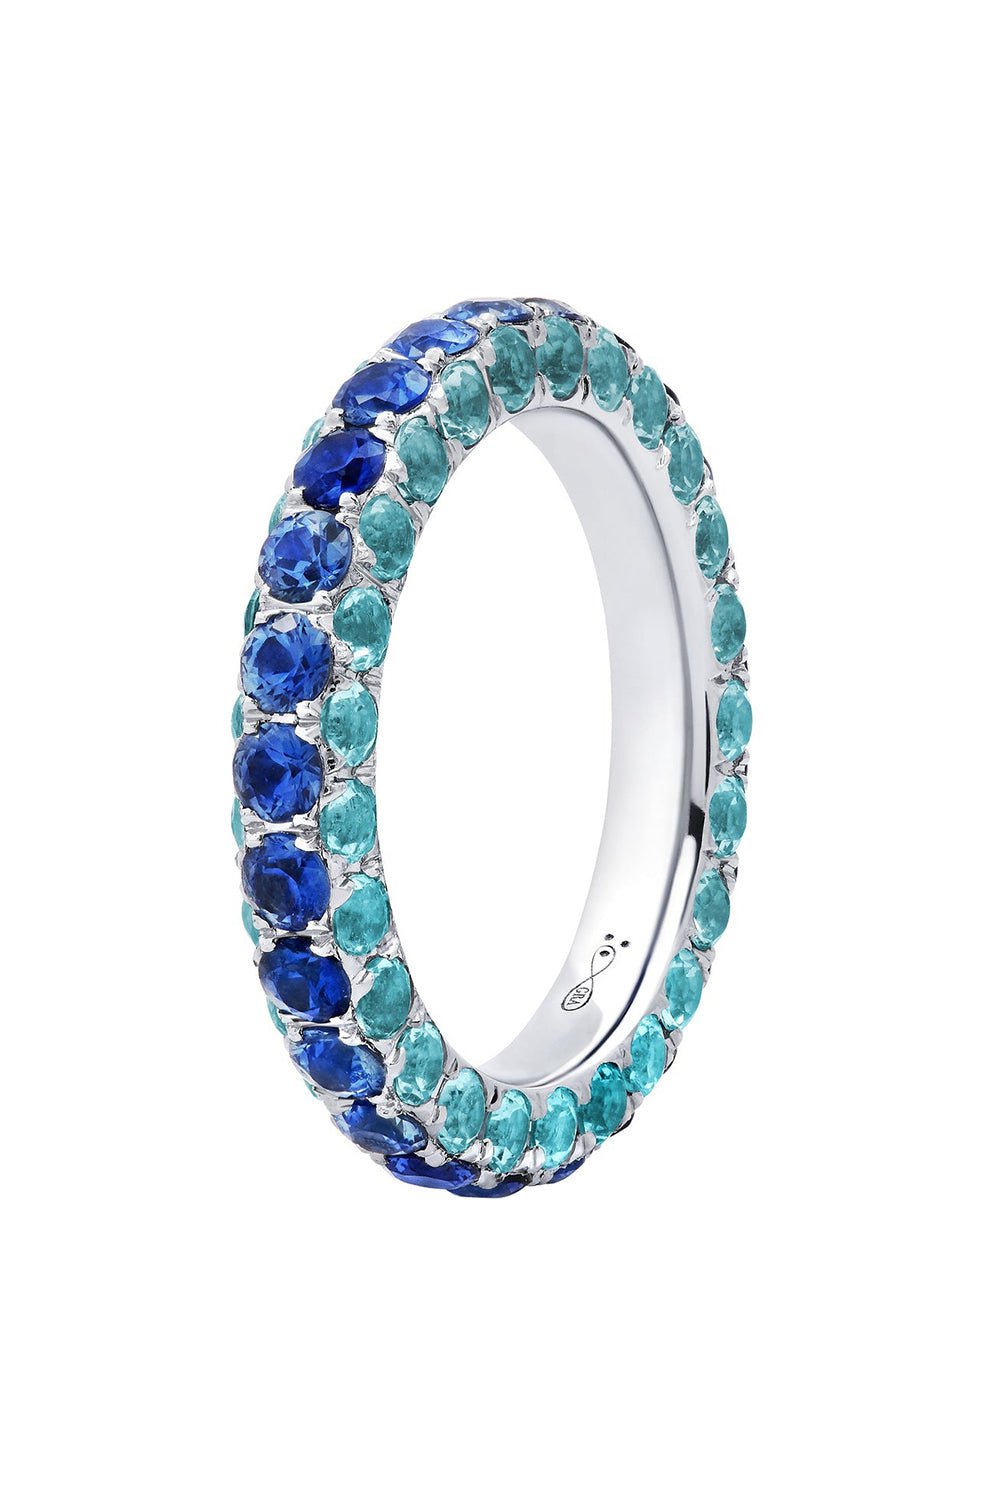 Blue Topaz Sapphire 3 Sided Ring JEWELRYFINE JEWELRING GRAZIELA   